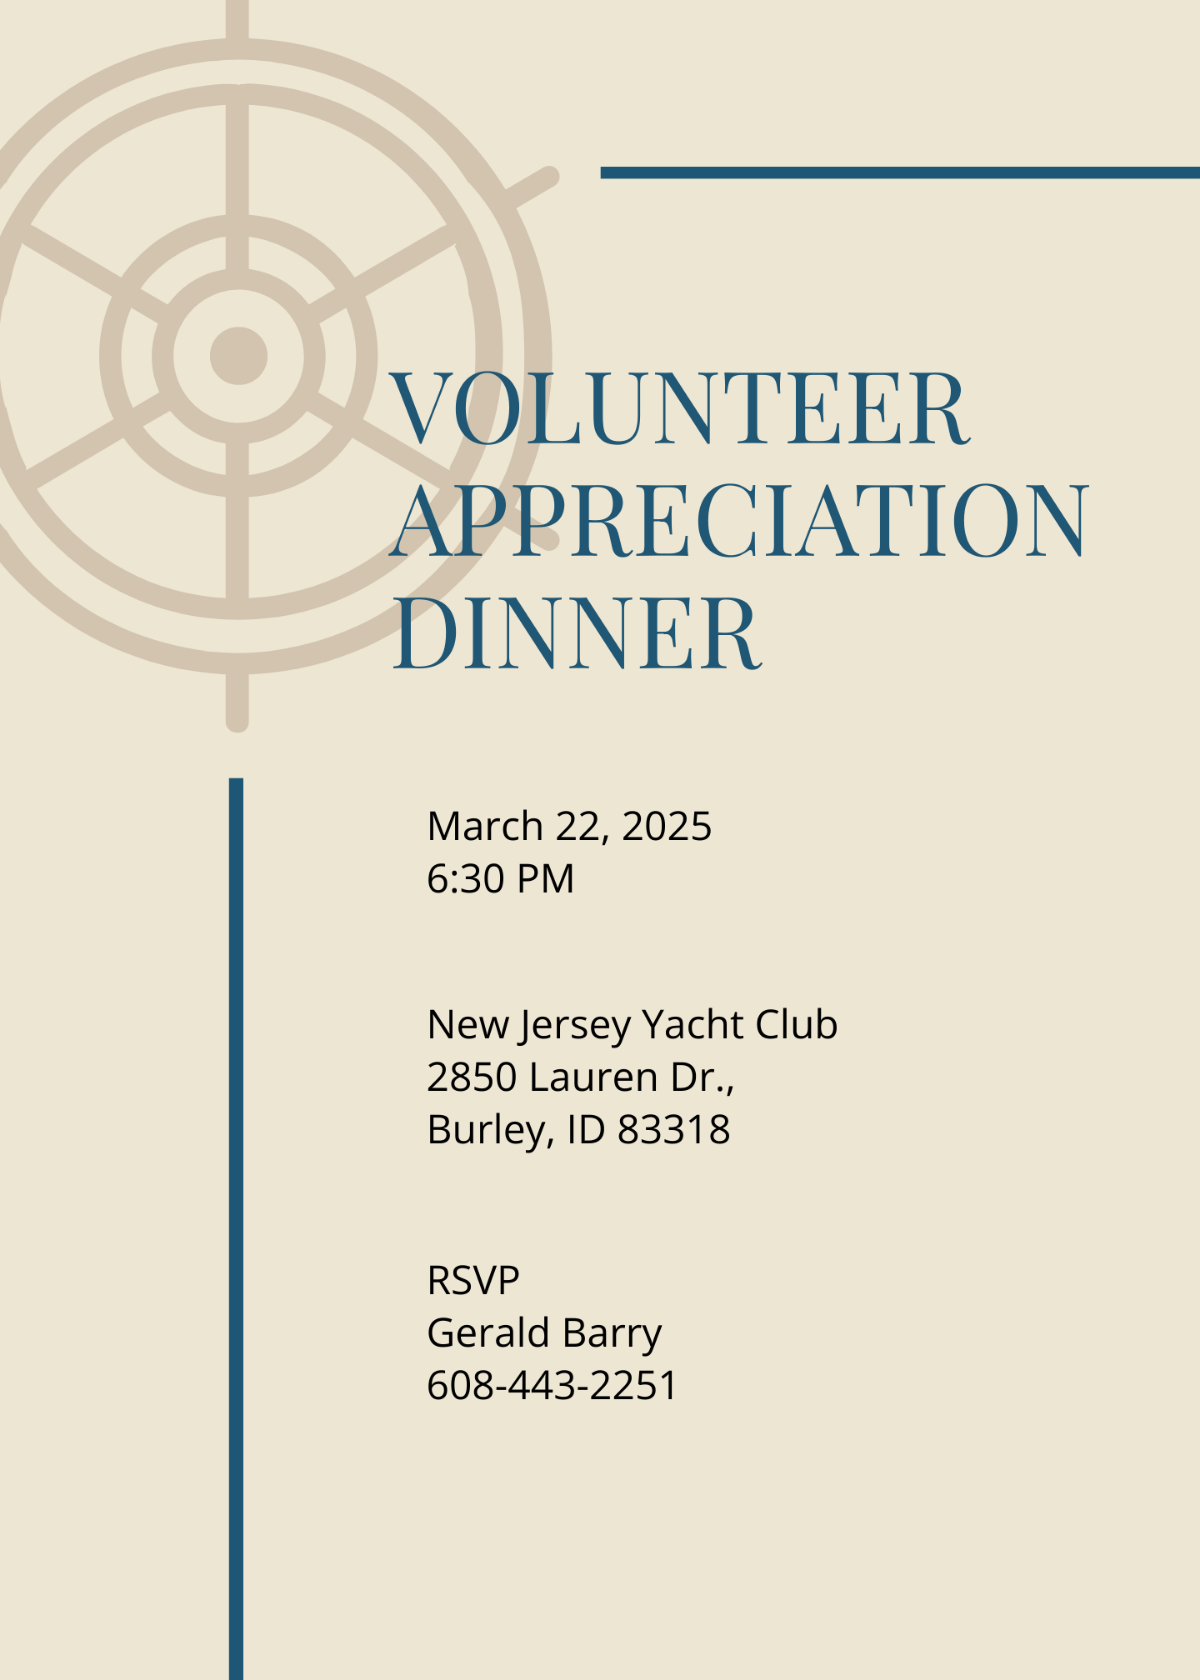 Volunteer Appreciation Dinner Invitation Template